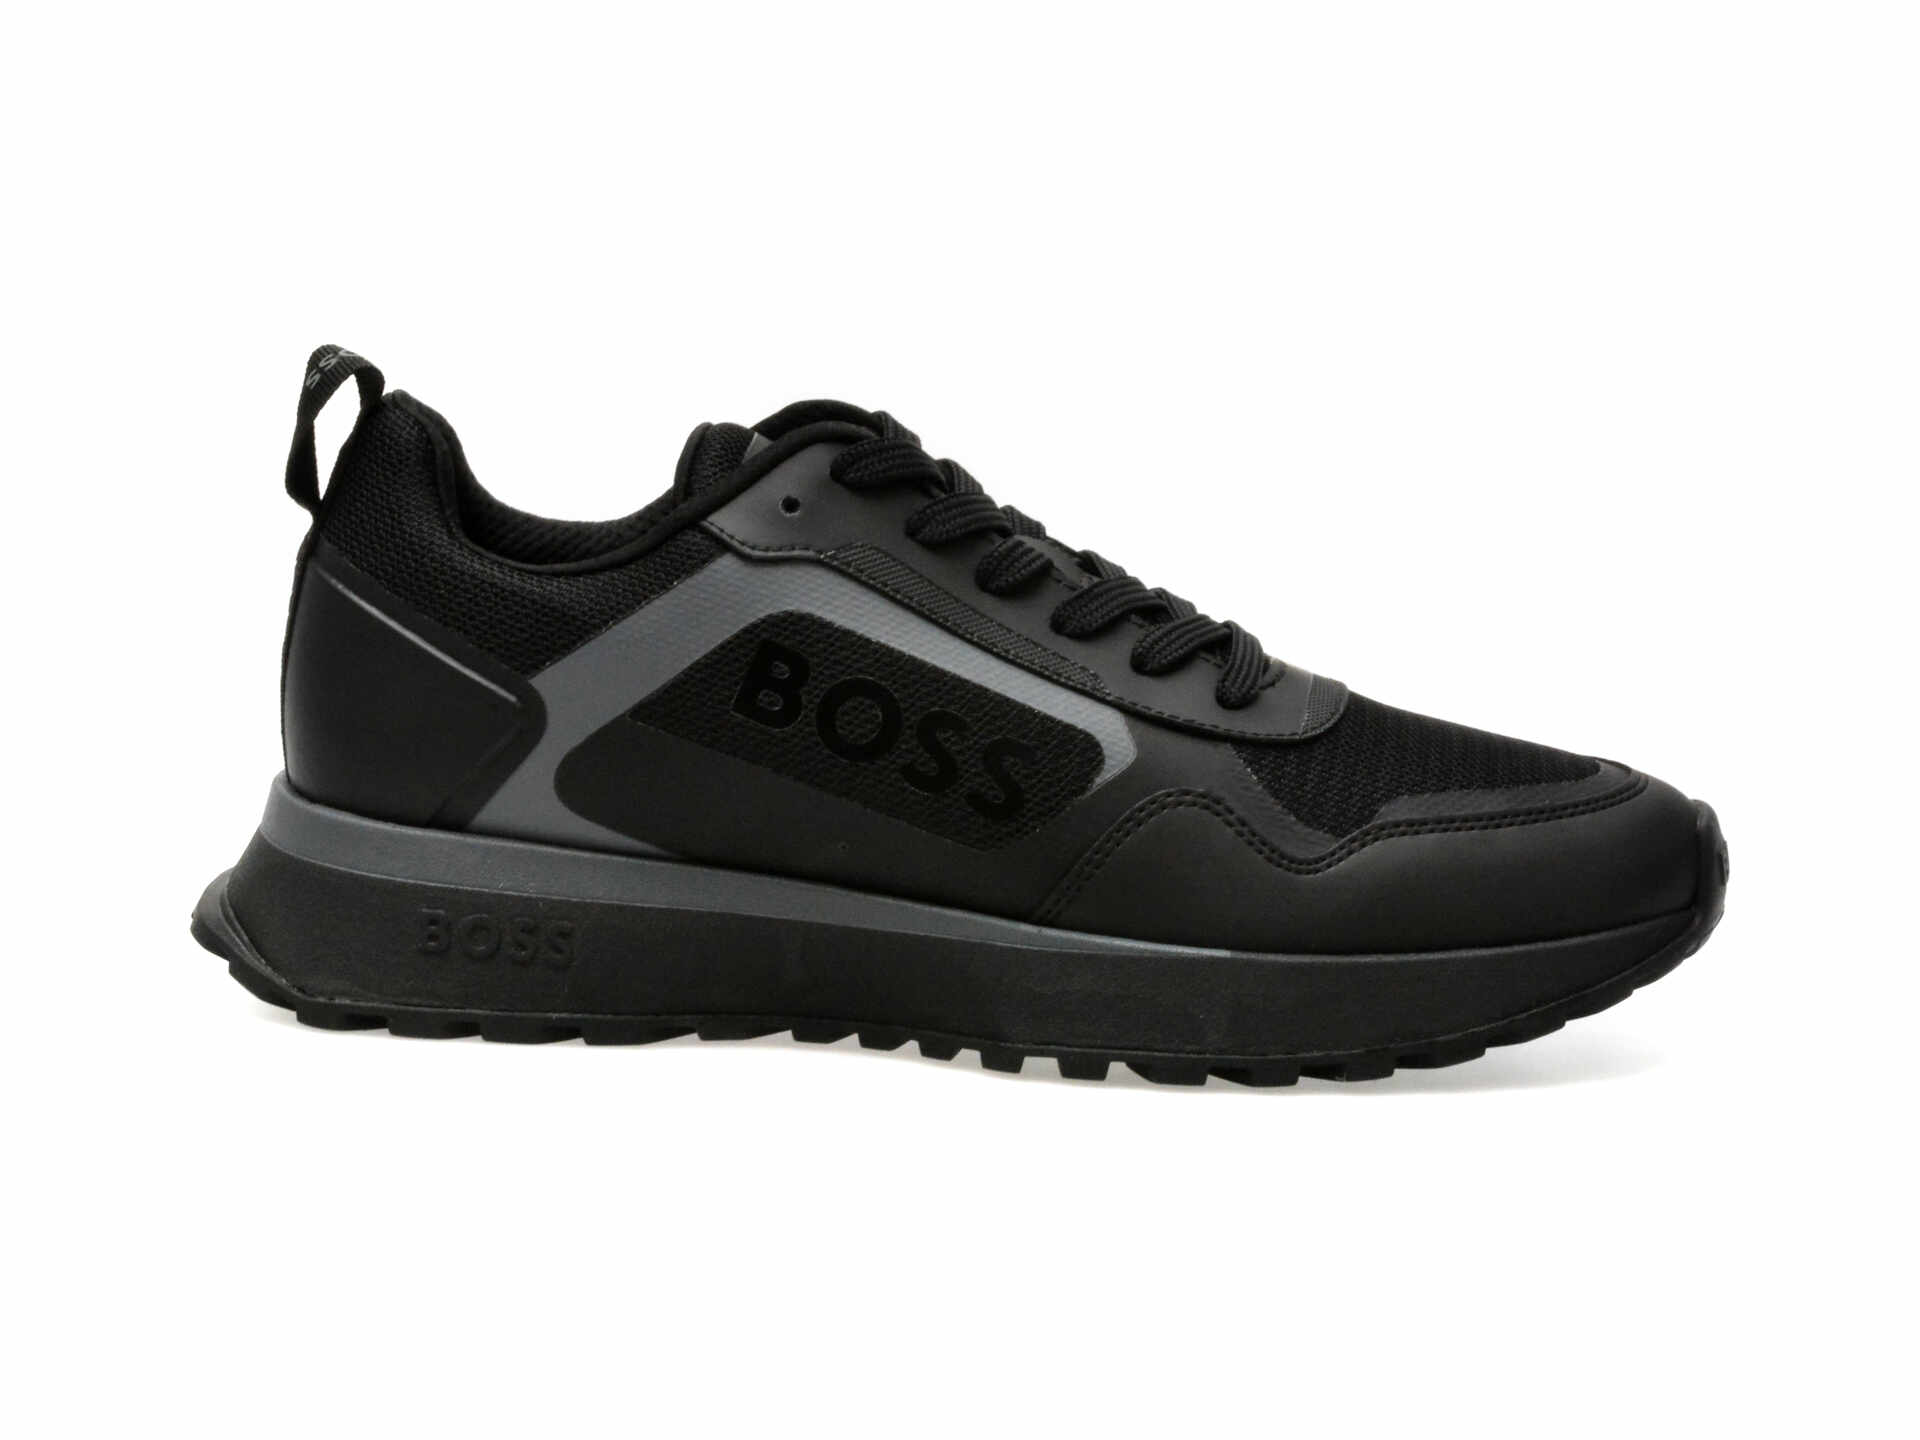 Pantofi sport BOSS negri, 730011, din piele ecologica